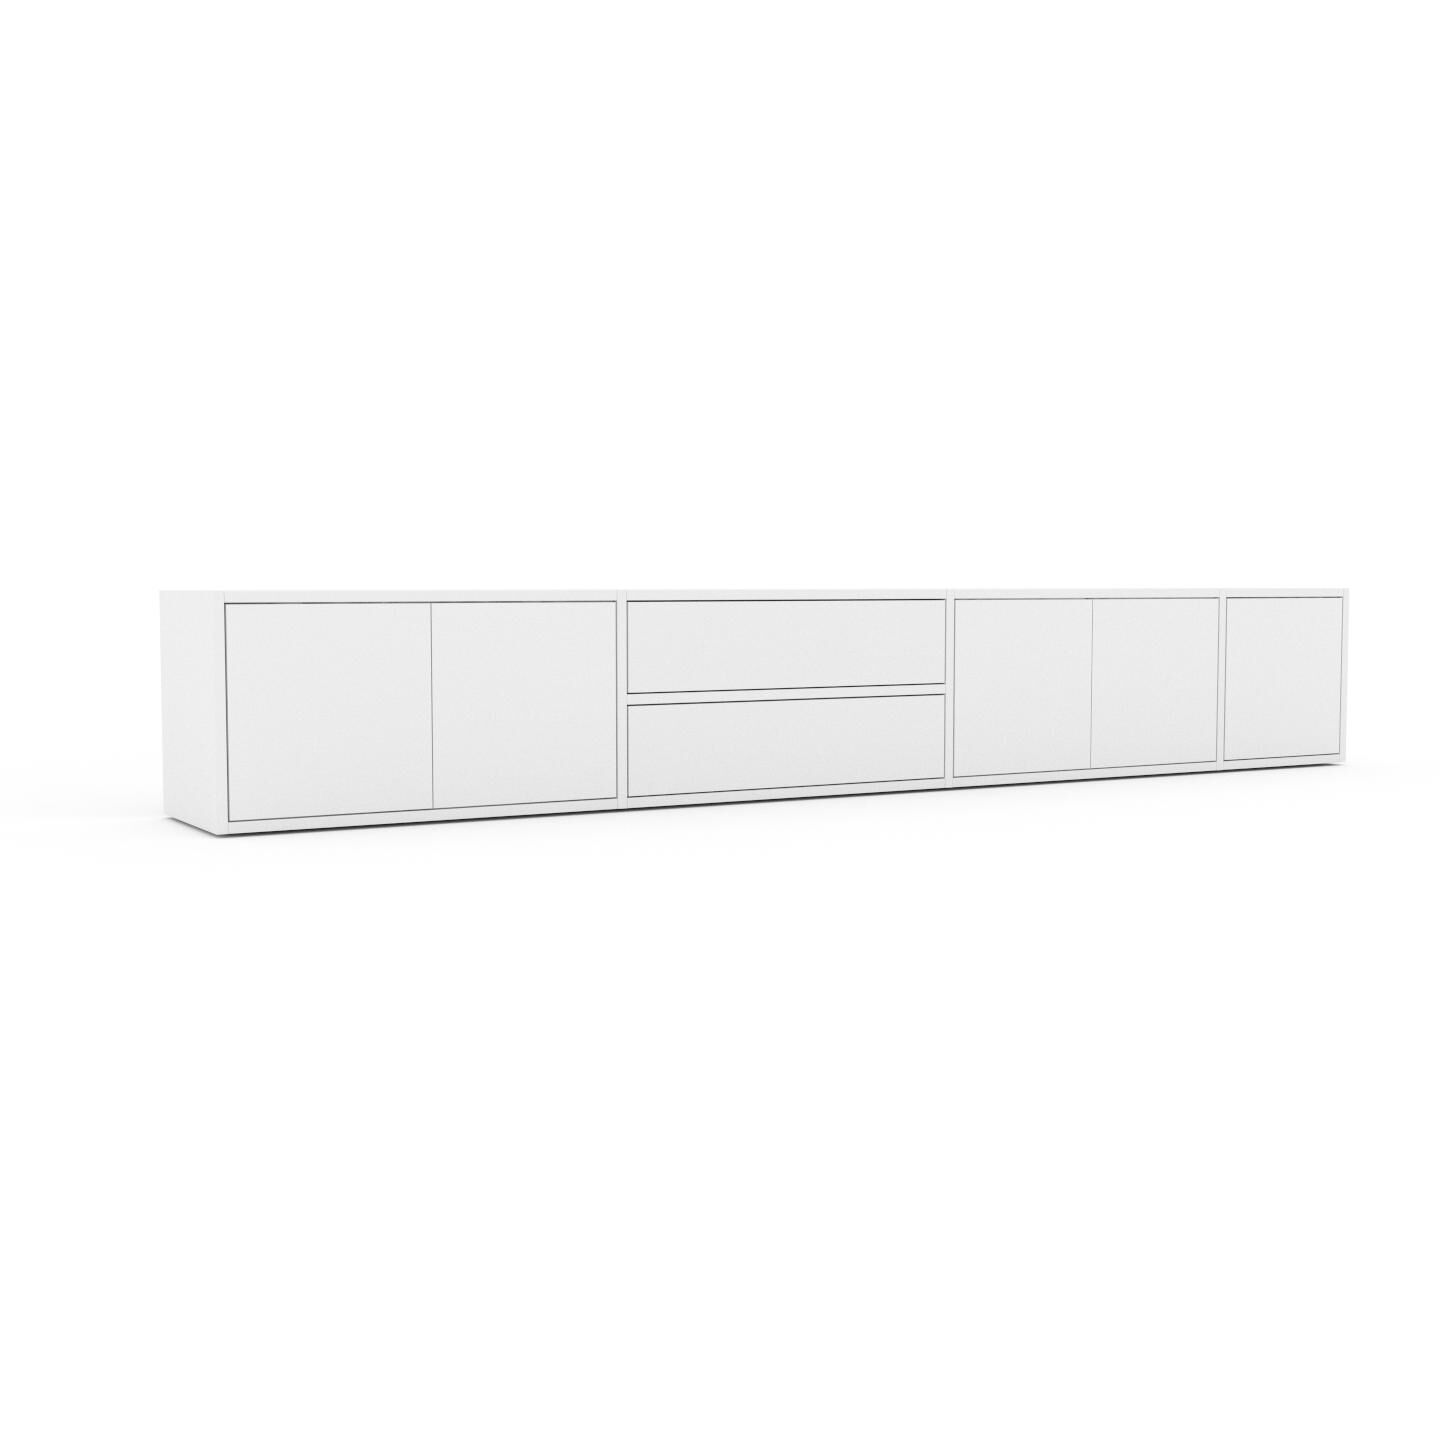 MYCS Bücherregal Weiß - Modernes Regal für Bücher: Schubladen in Weiß & Türen in Weiß - 265 x 41 x 35 cm, konfigurierbar